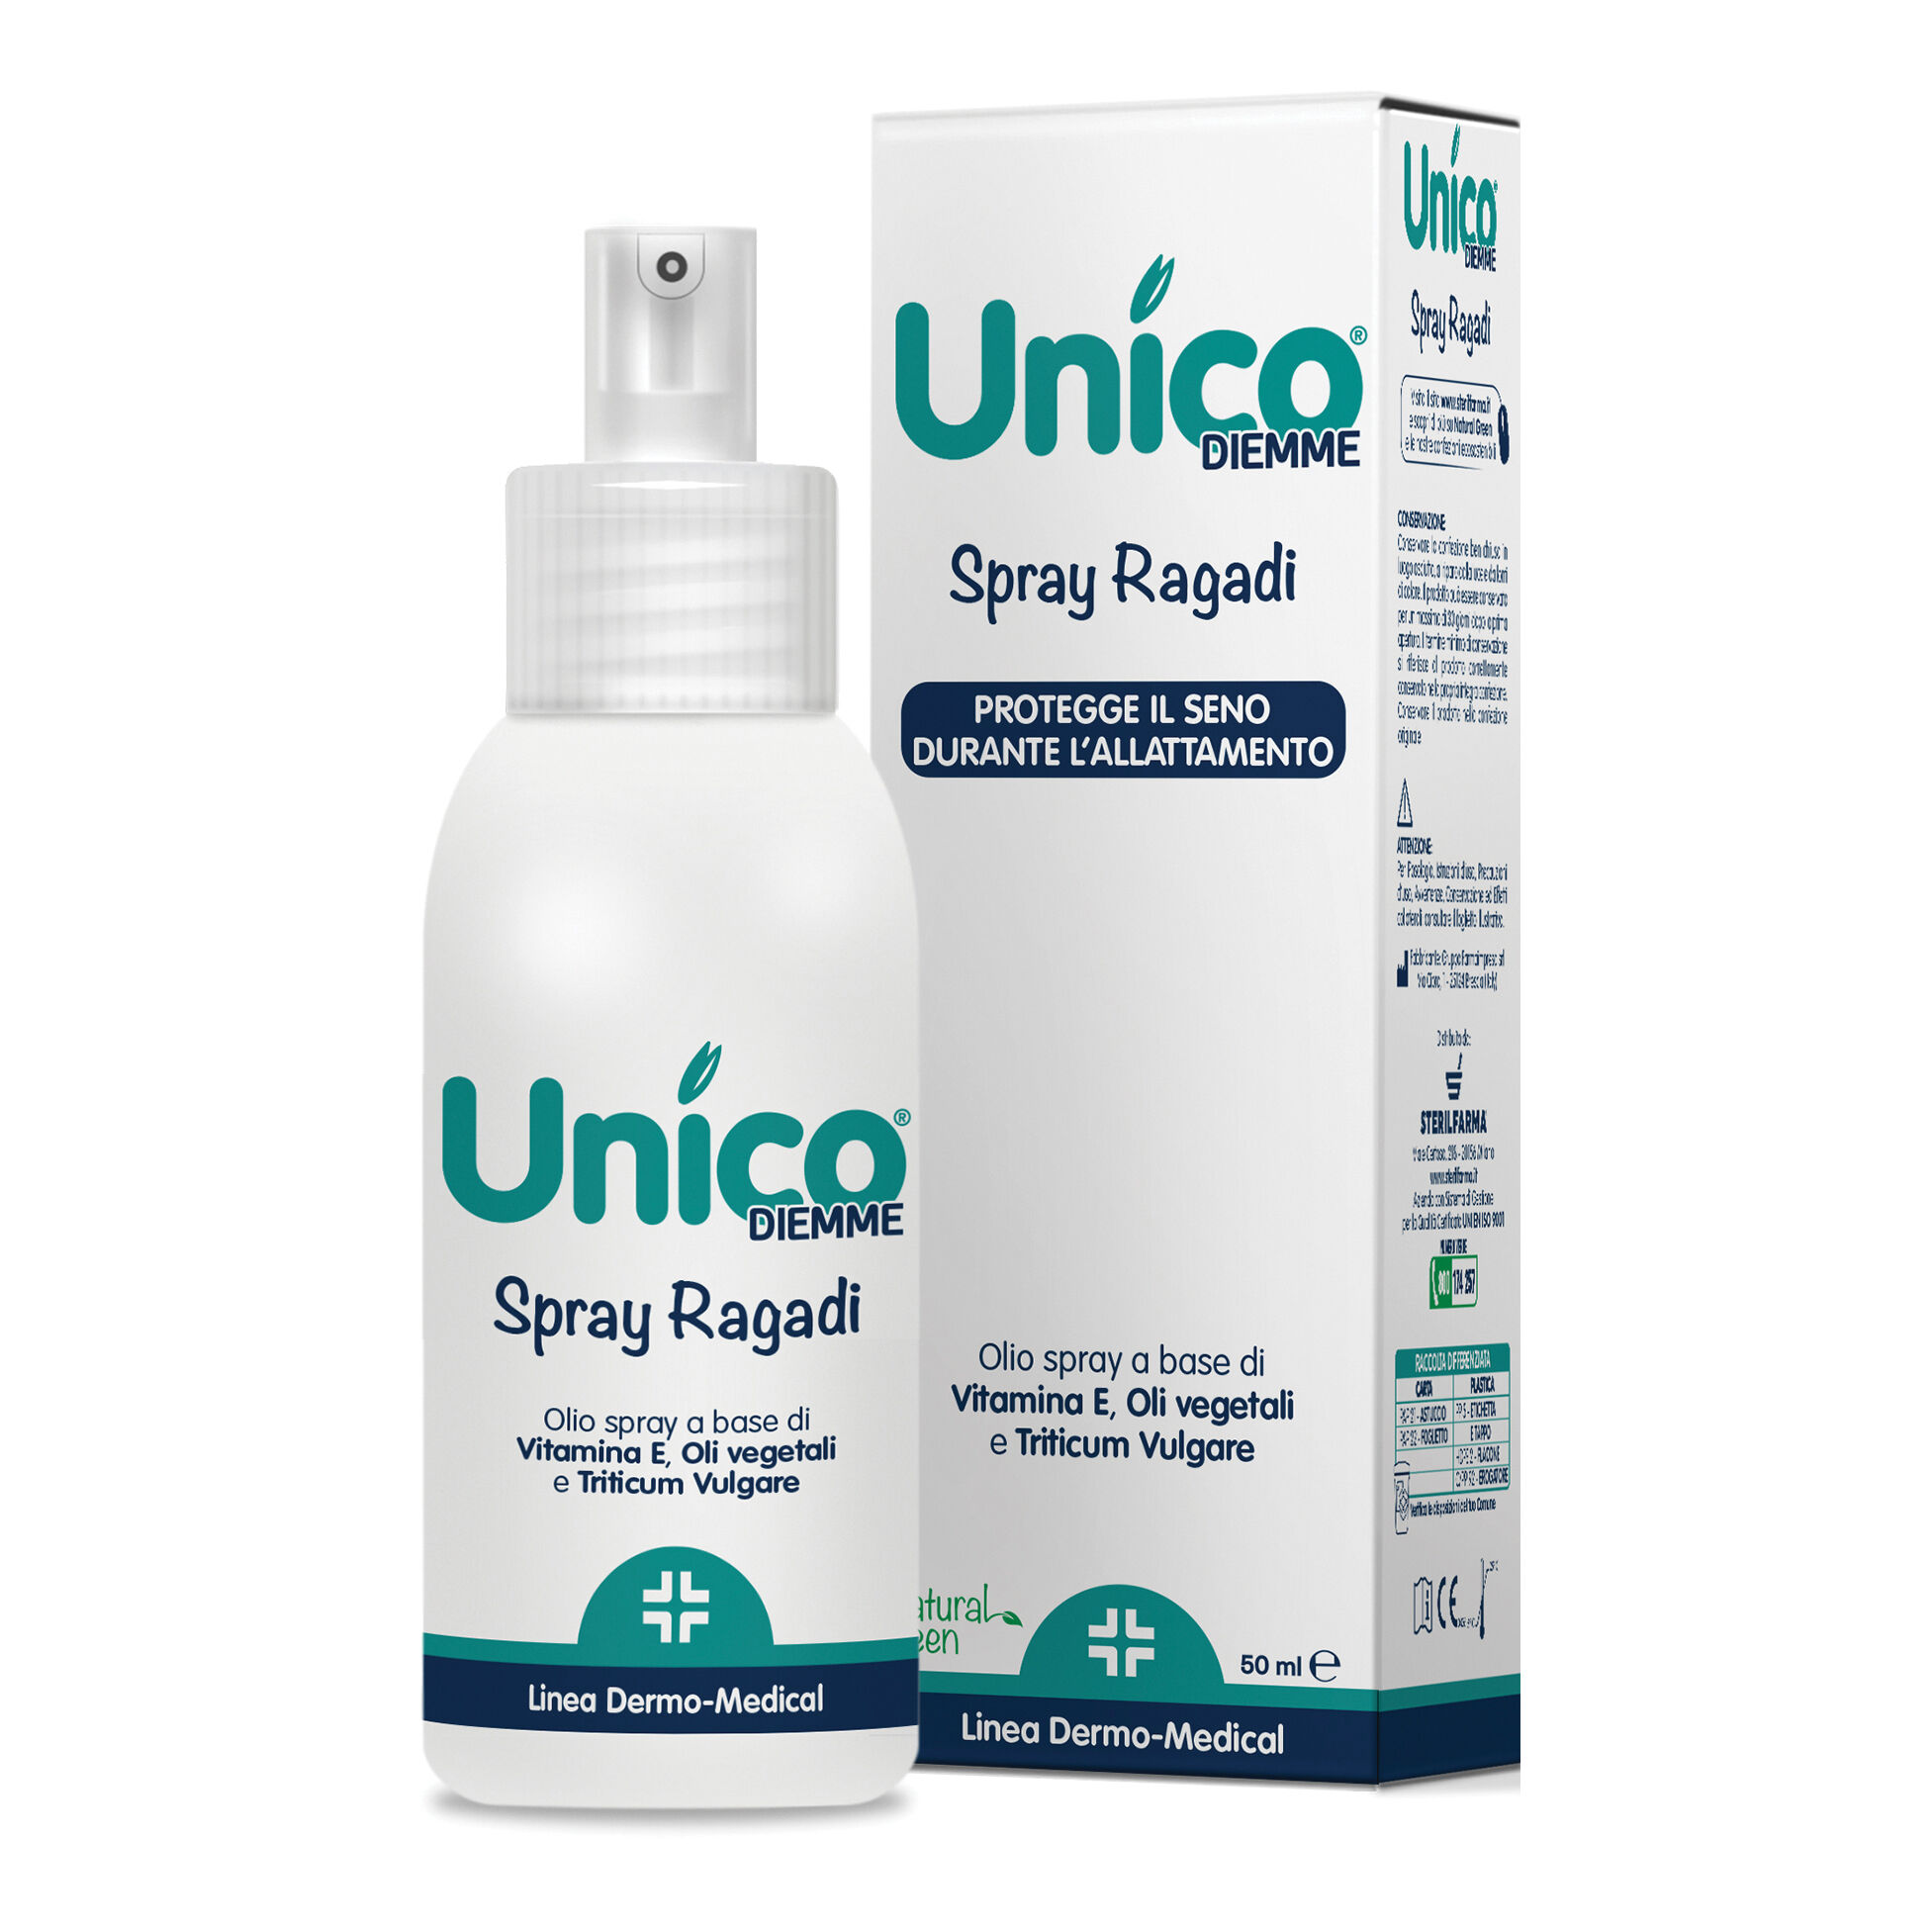 sterilfarma Unico diemme spray ragadi 50 ml